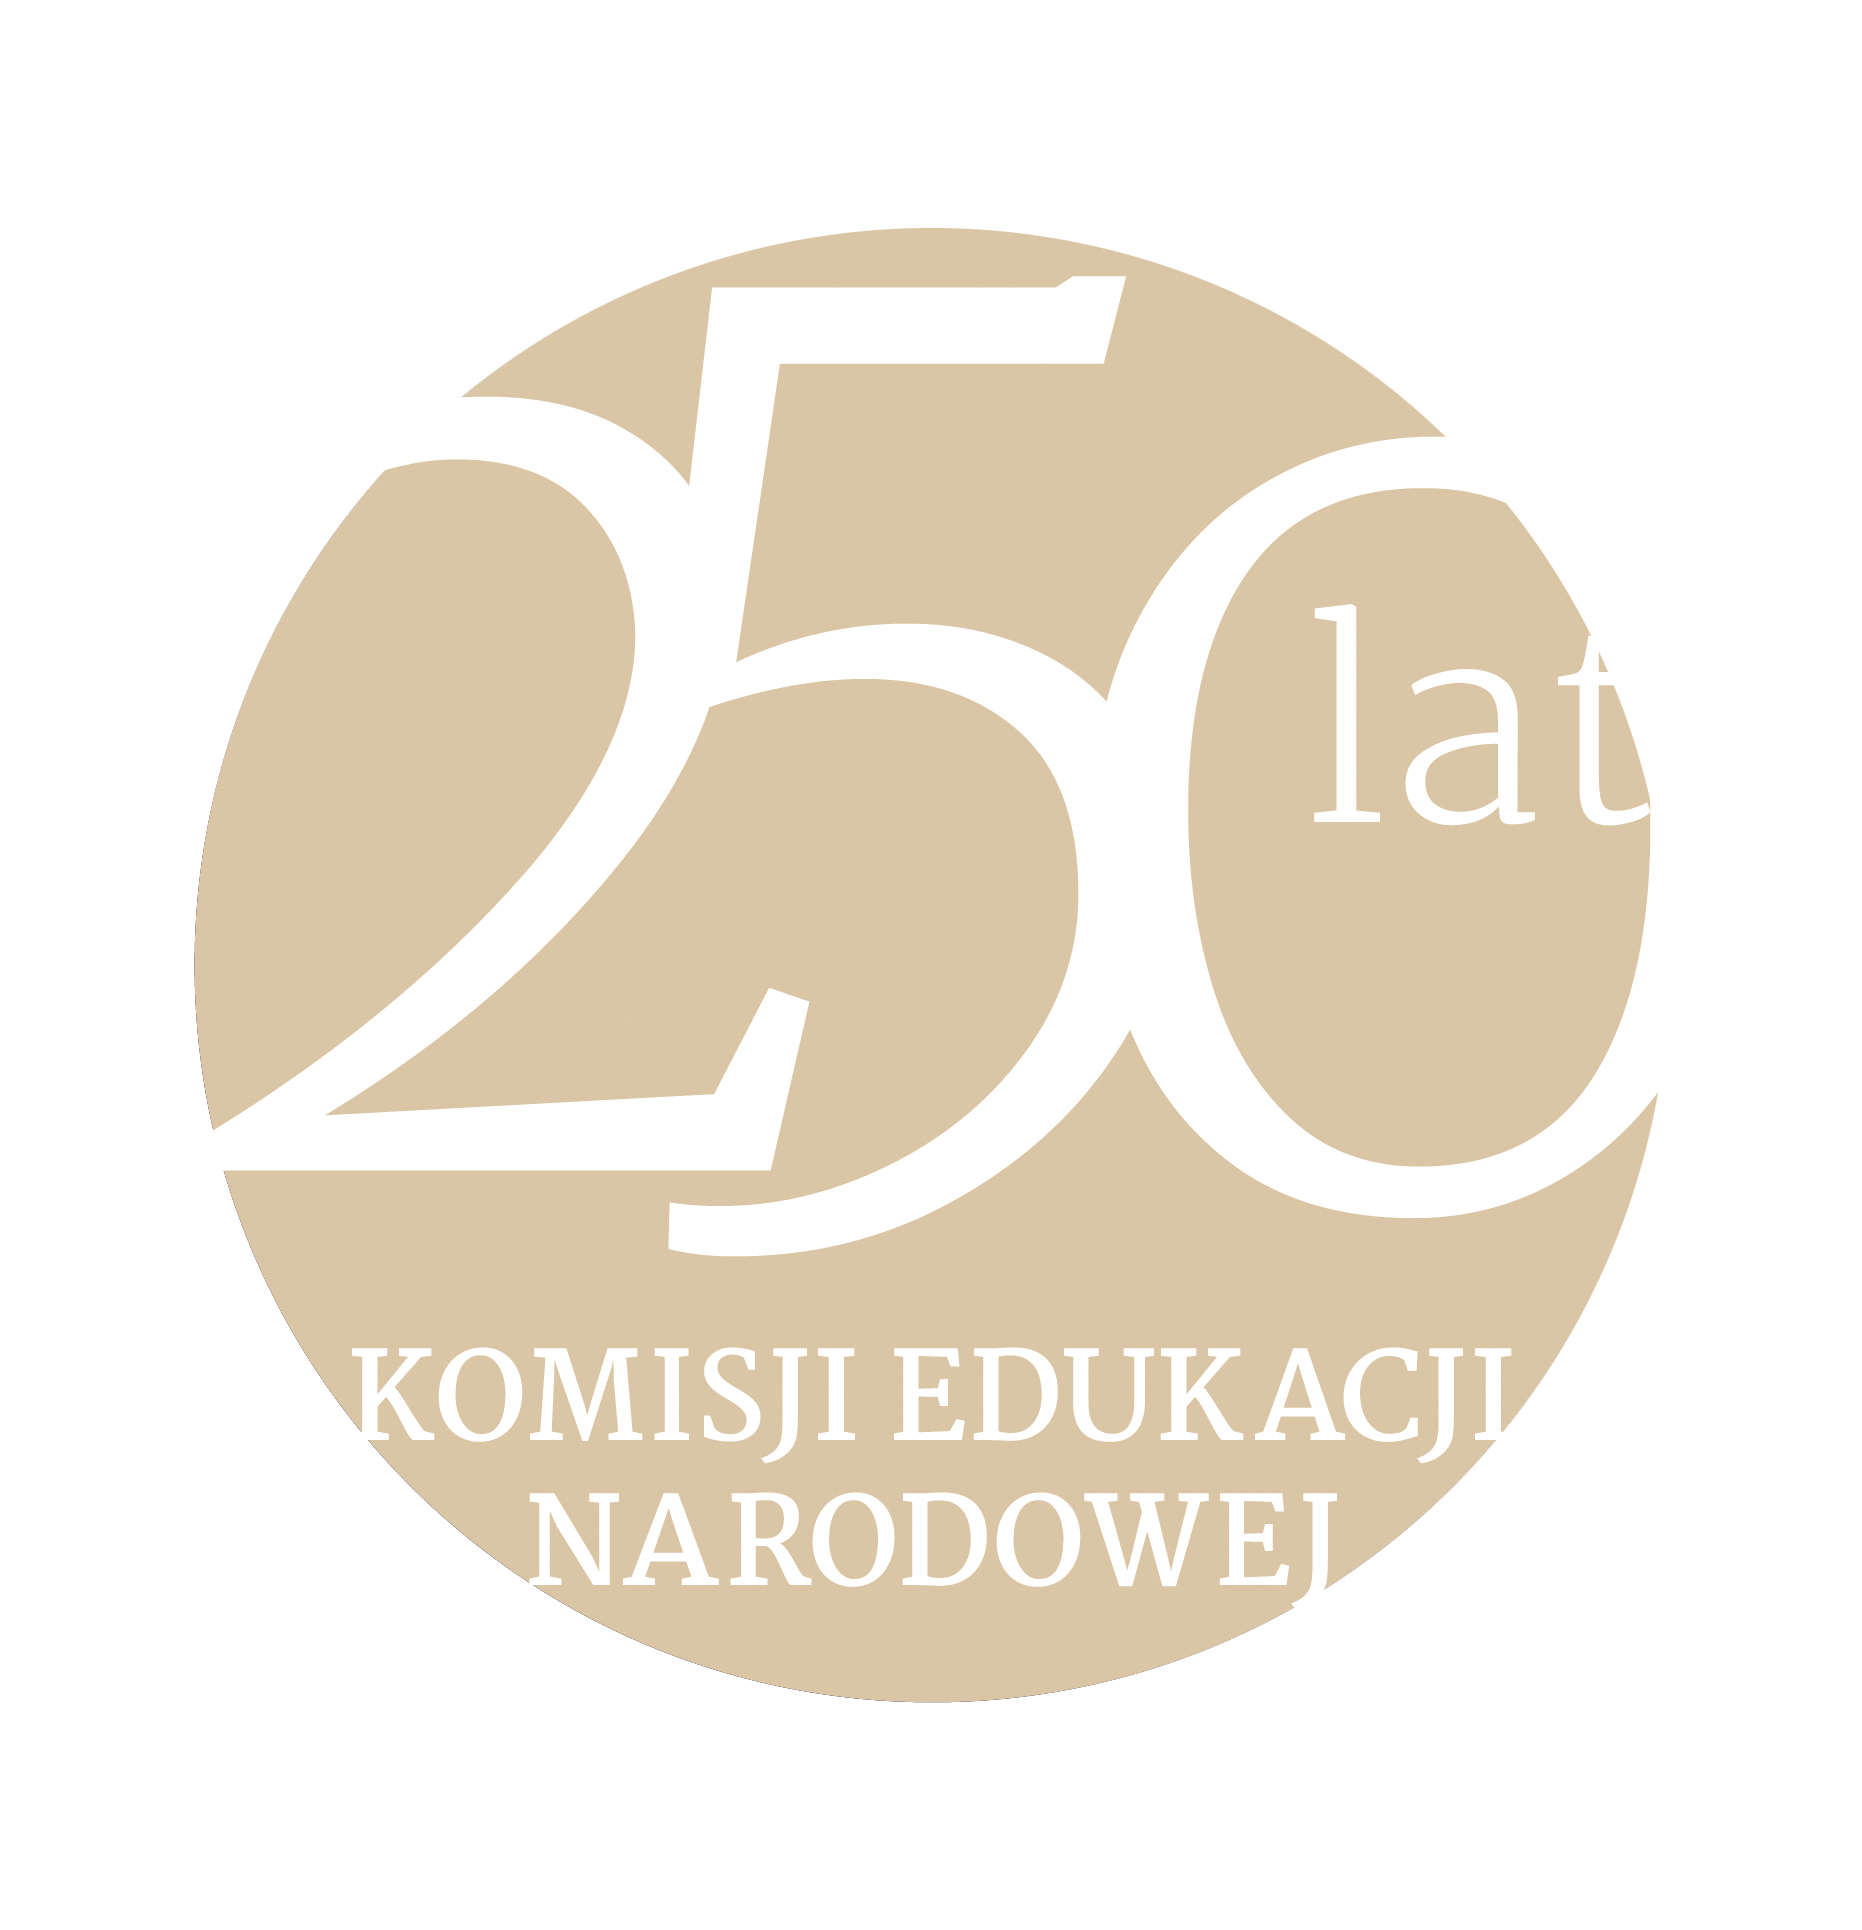 250 lat komisji edukacji narodowej logo